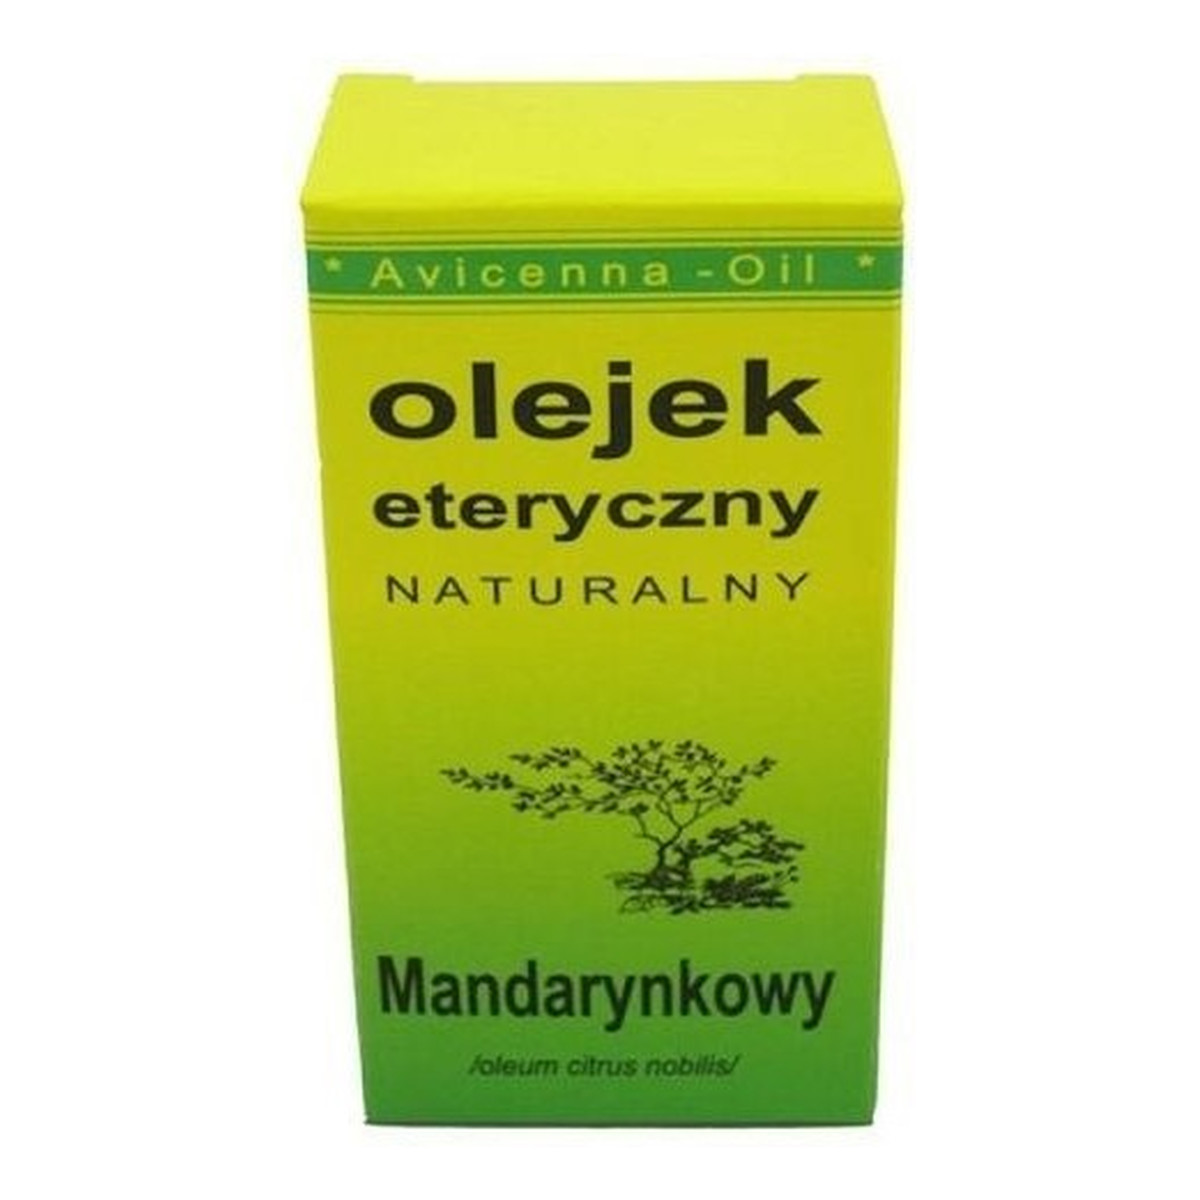 Avicenna-Oil Naturalny Olejek Eteryczny Mandarynkowy 7ml